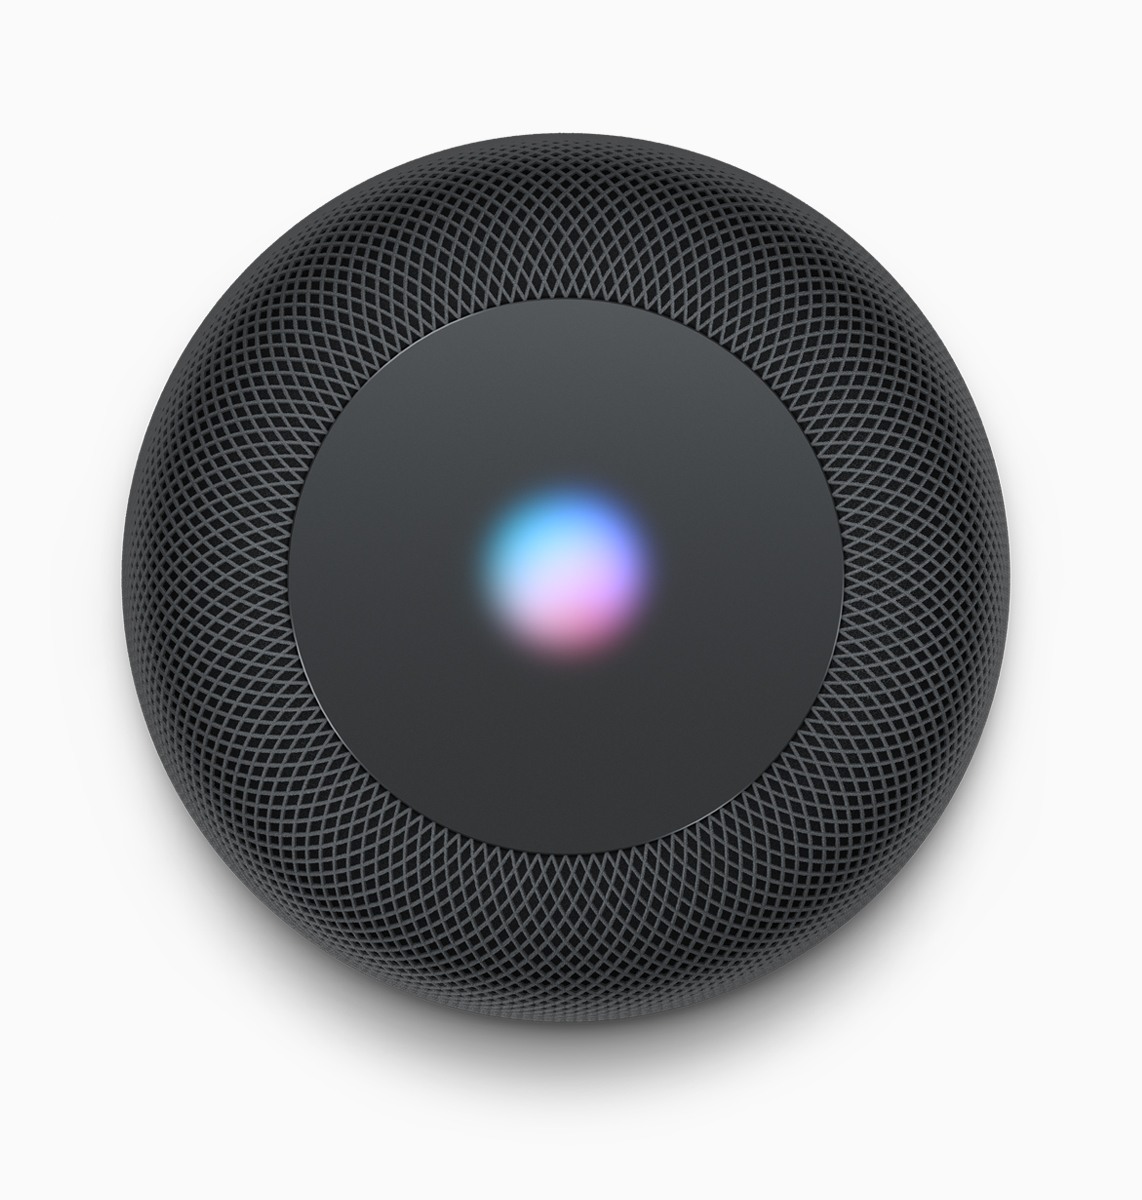 Apples Assistenzsoftware Siri ist integriert und mit ihr kann man sich mit Hilfe eines Systems aus sechs Mikrofonen unterhalten.